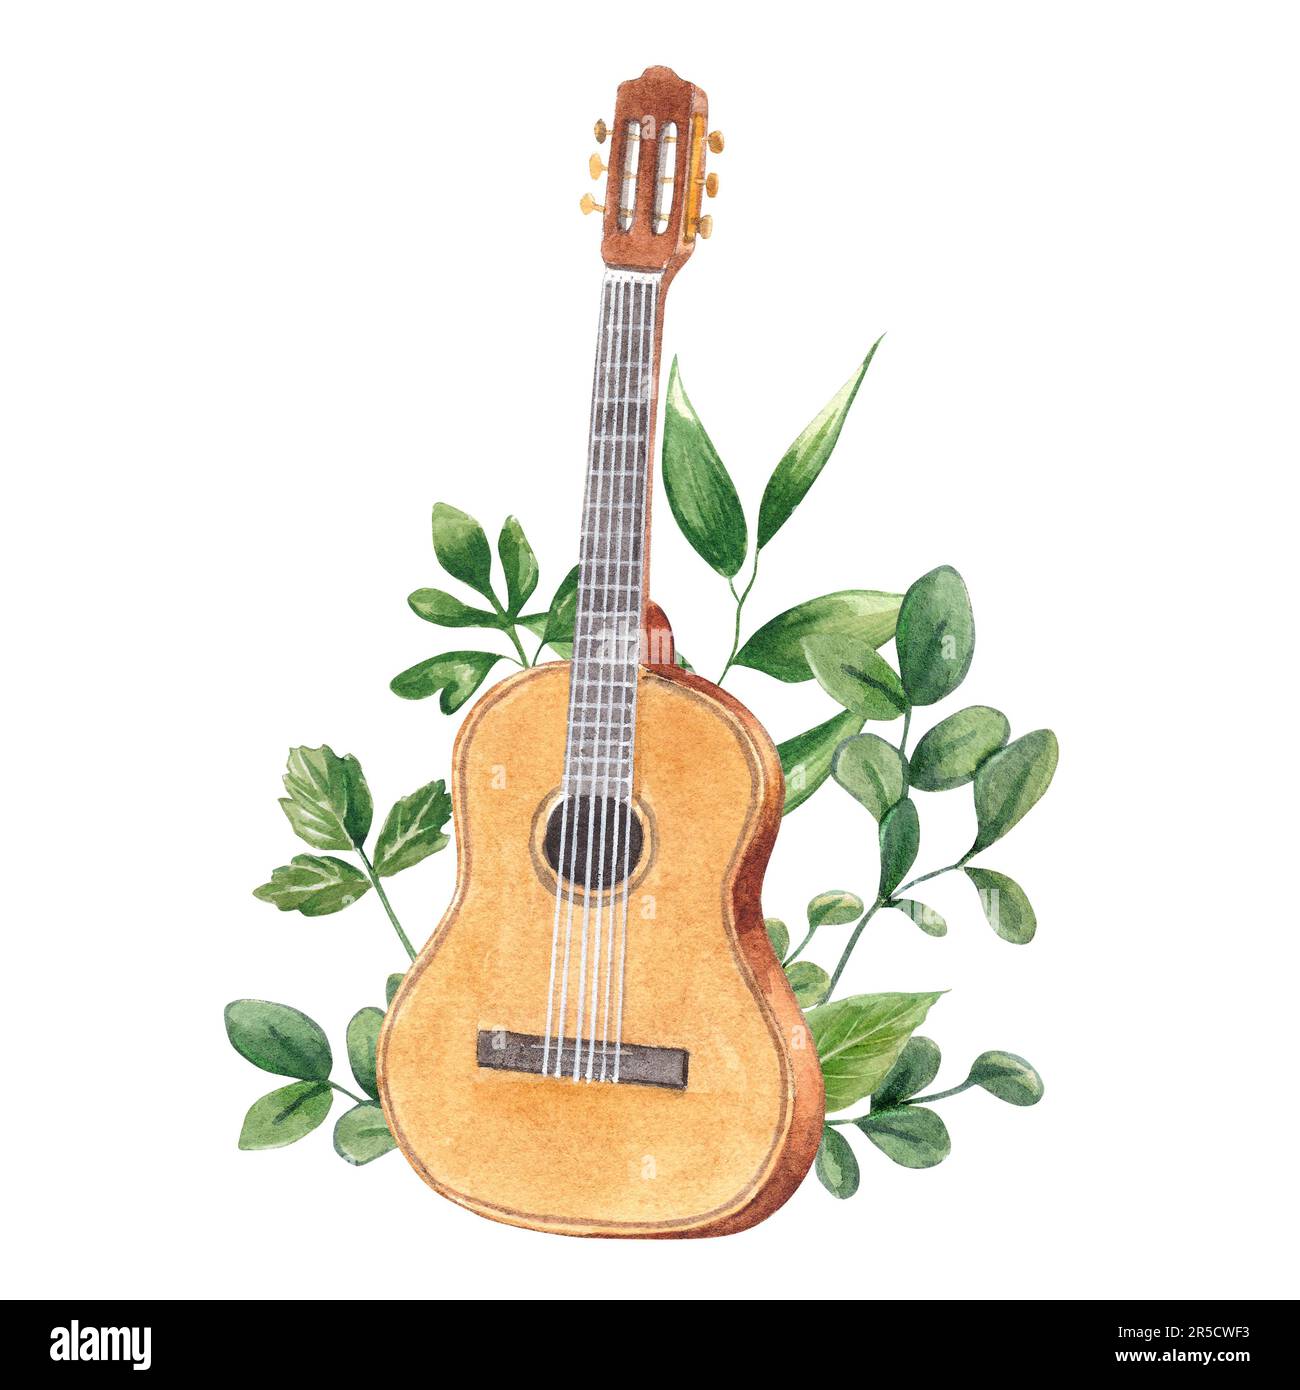 Guitare classique dans les feuilles et la verdure isolée sur fond blanc. Aquarelle illustration dessinée à la main d'un instrument de musique à cordes en bois. Attache Banque D'Images